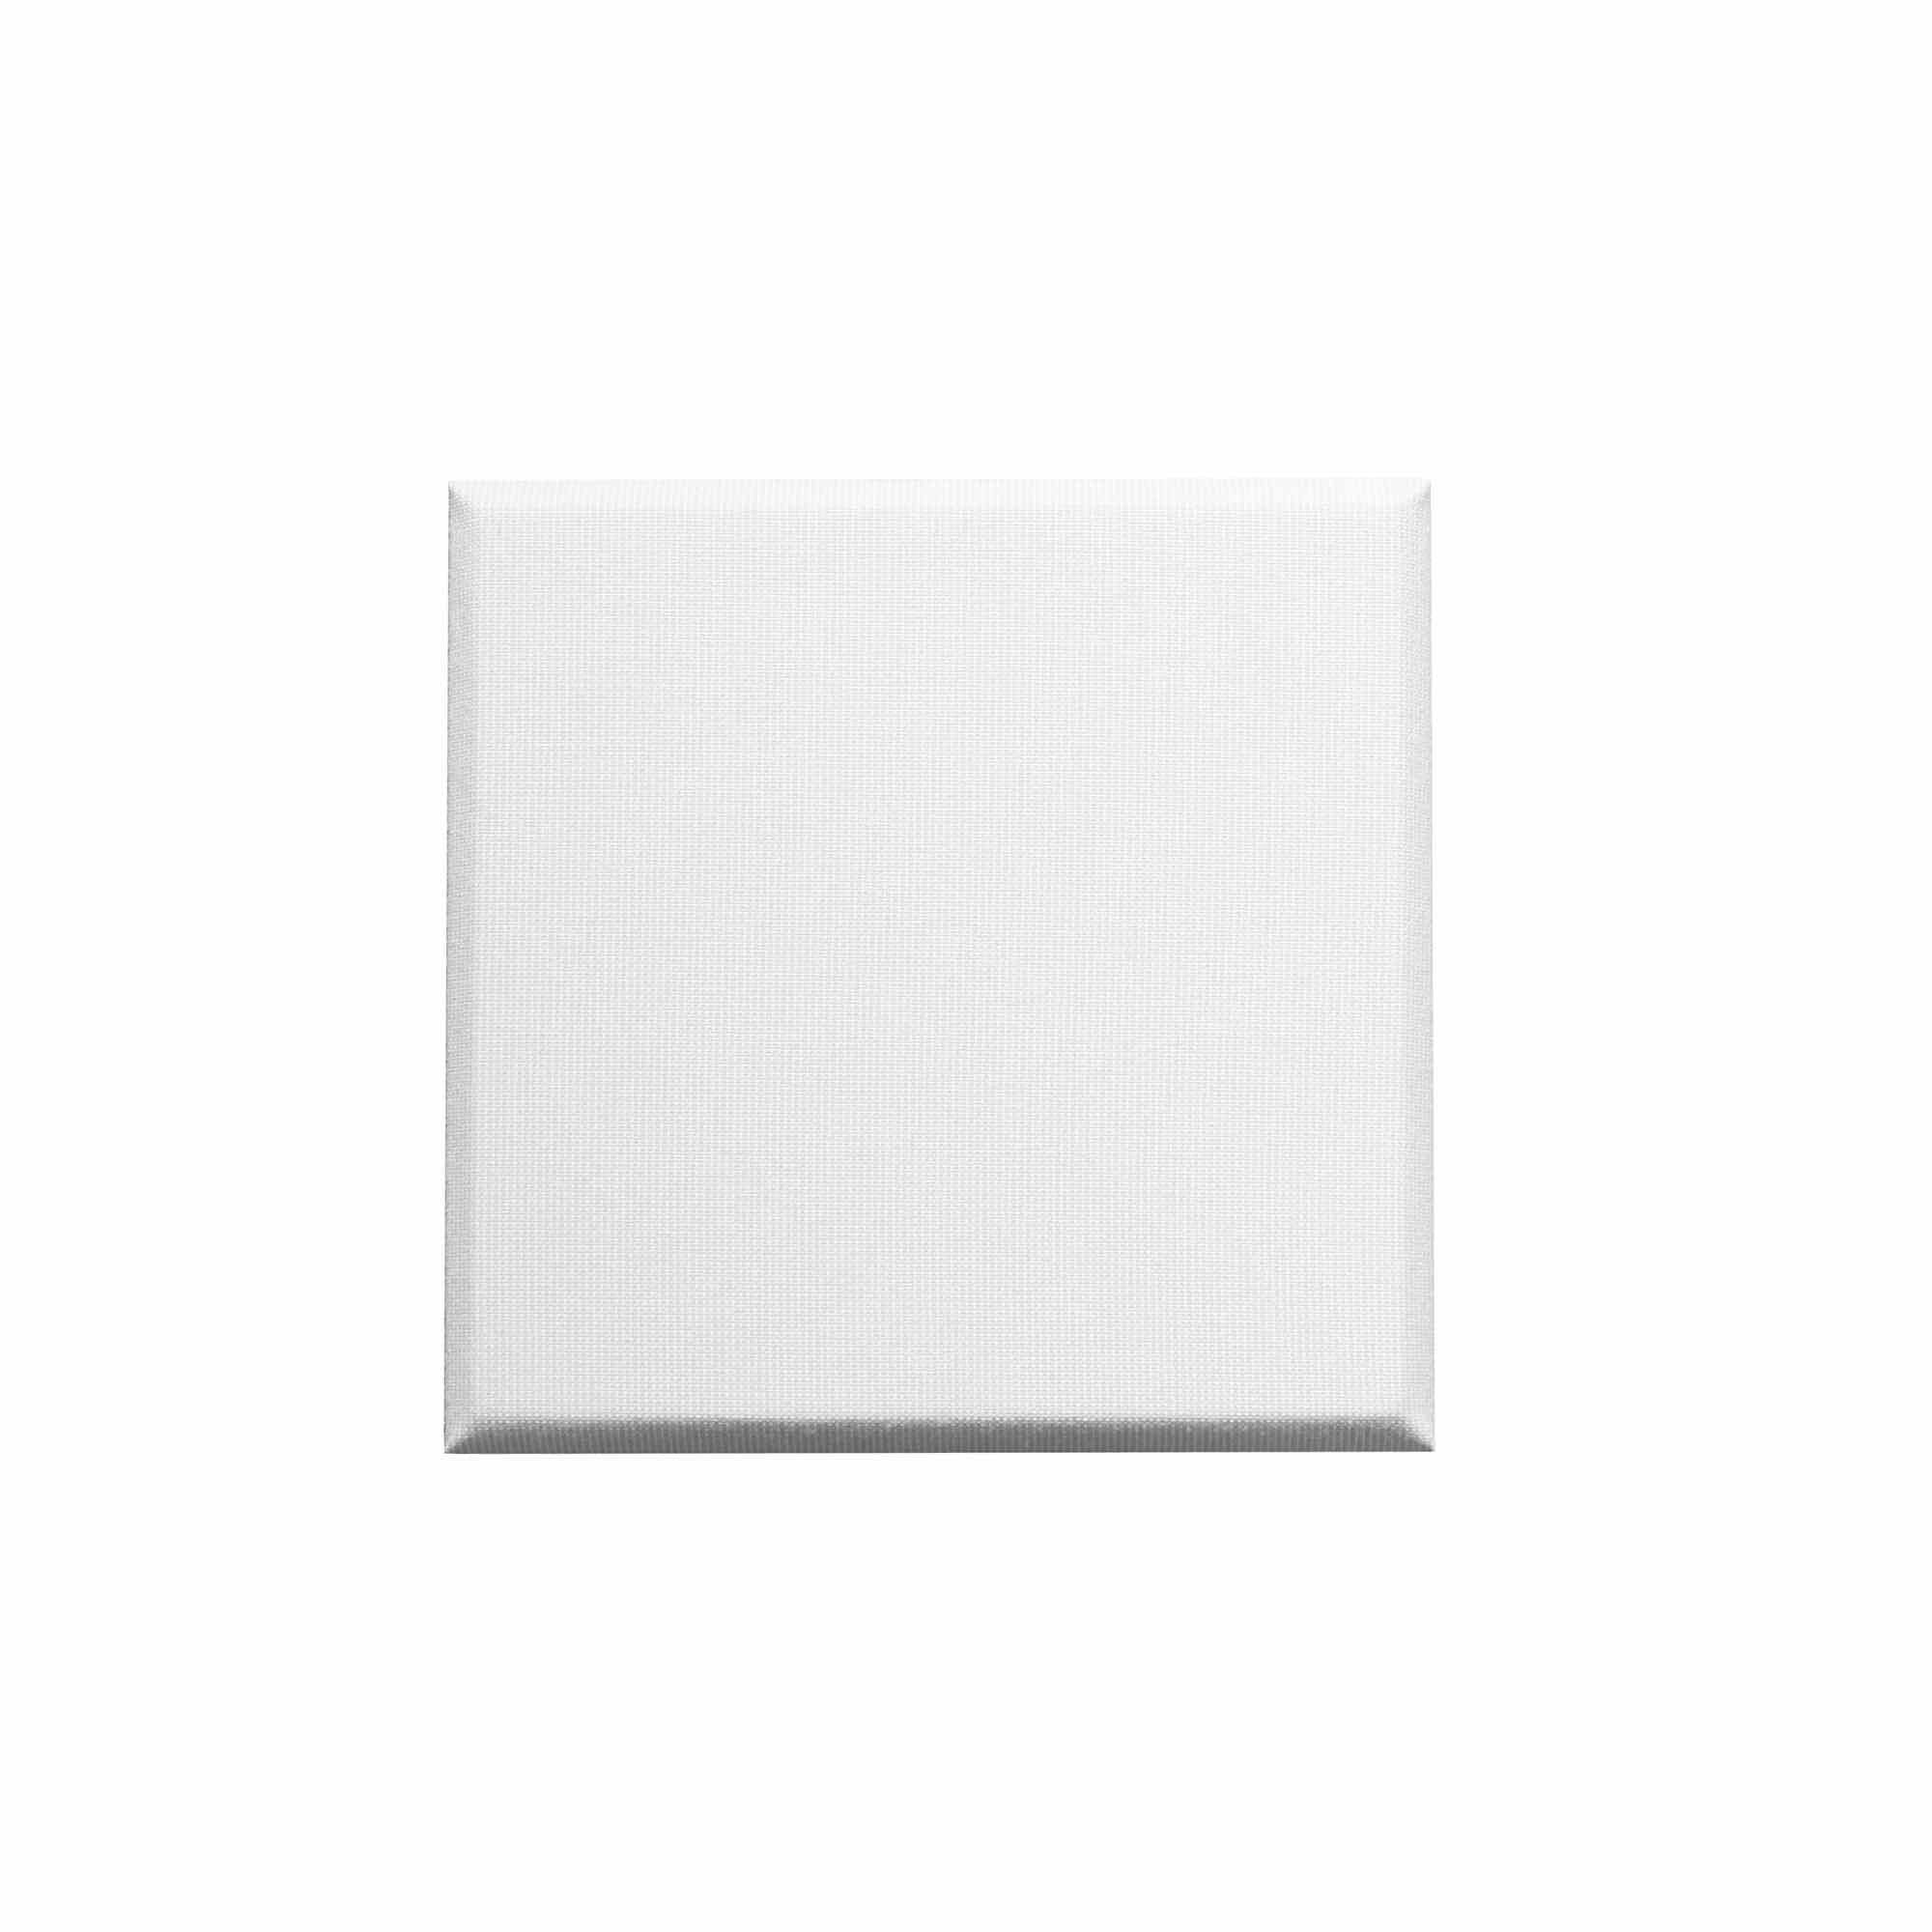 Acoustic Panels - Primacoustic Paintable Control Cubes 24x24x2